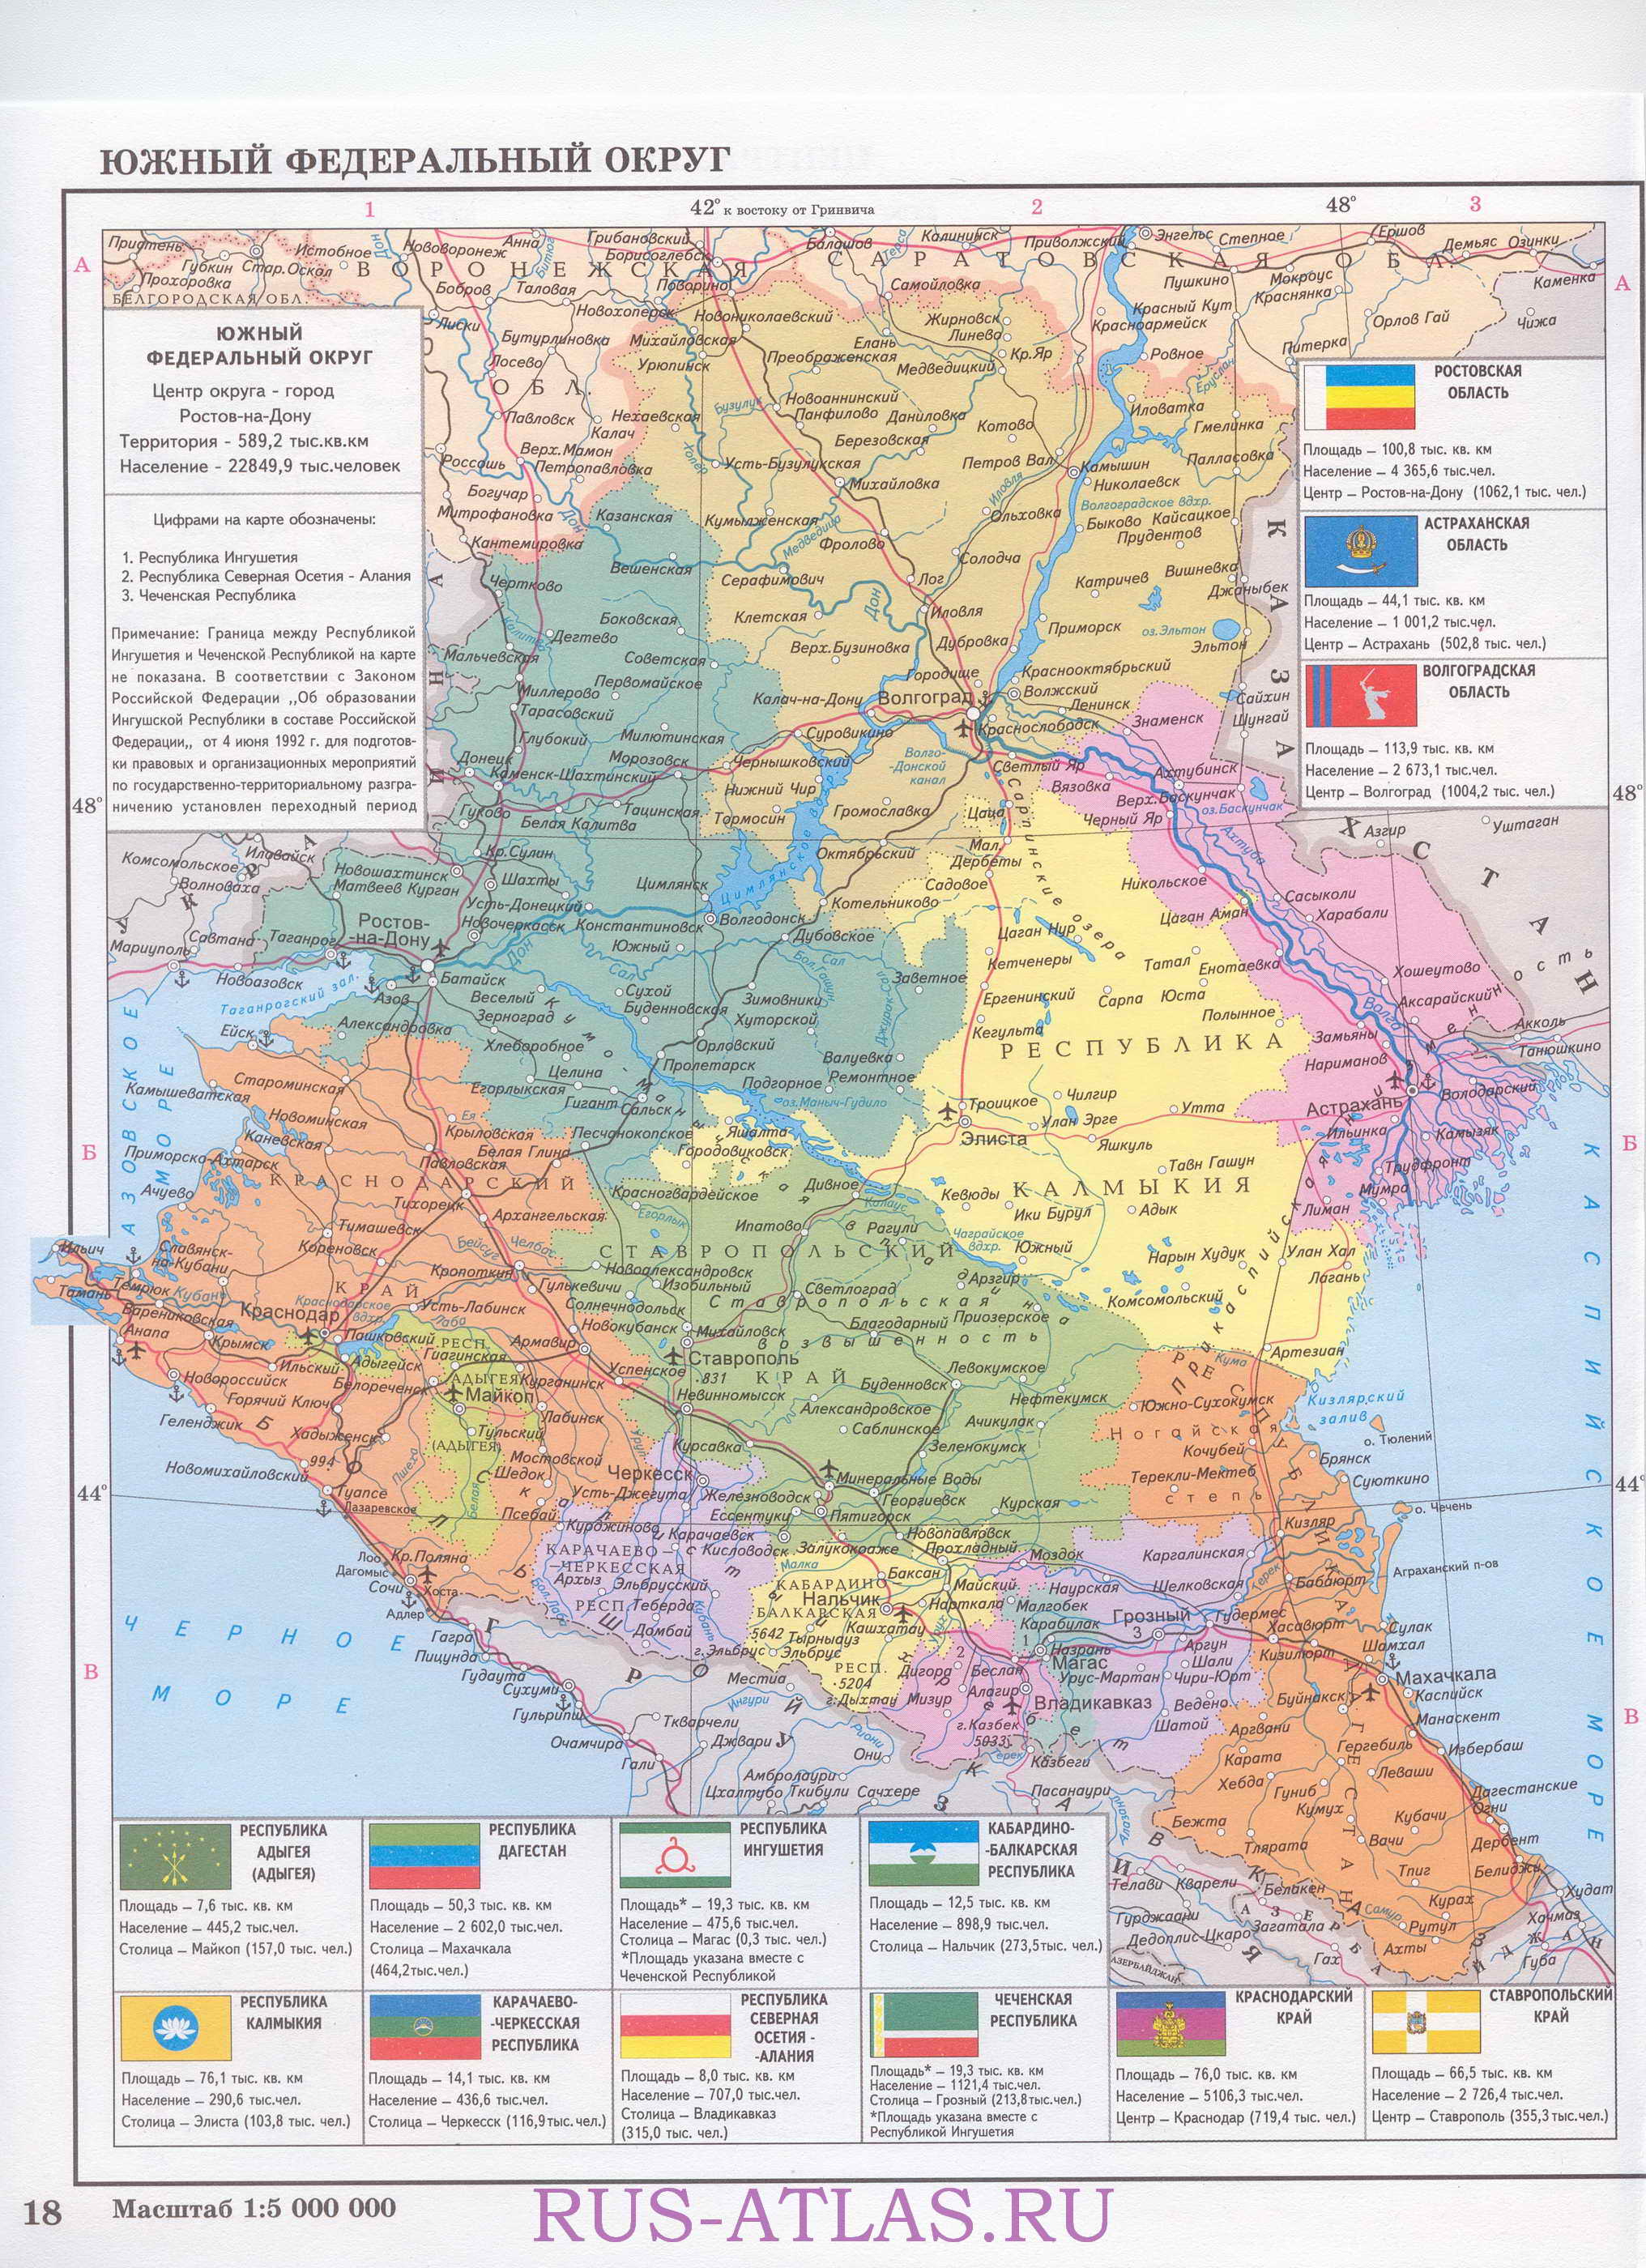  Карта южного федерального округа. Подробная карта областей южного федерального округа России, A0 - 